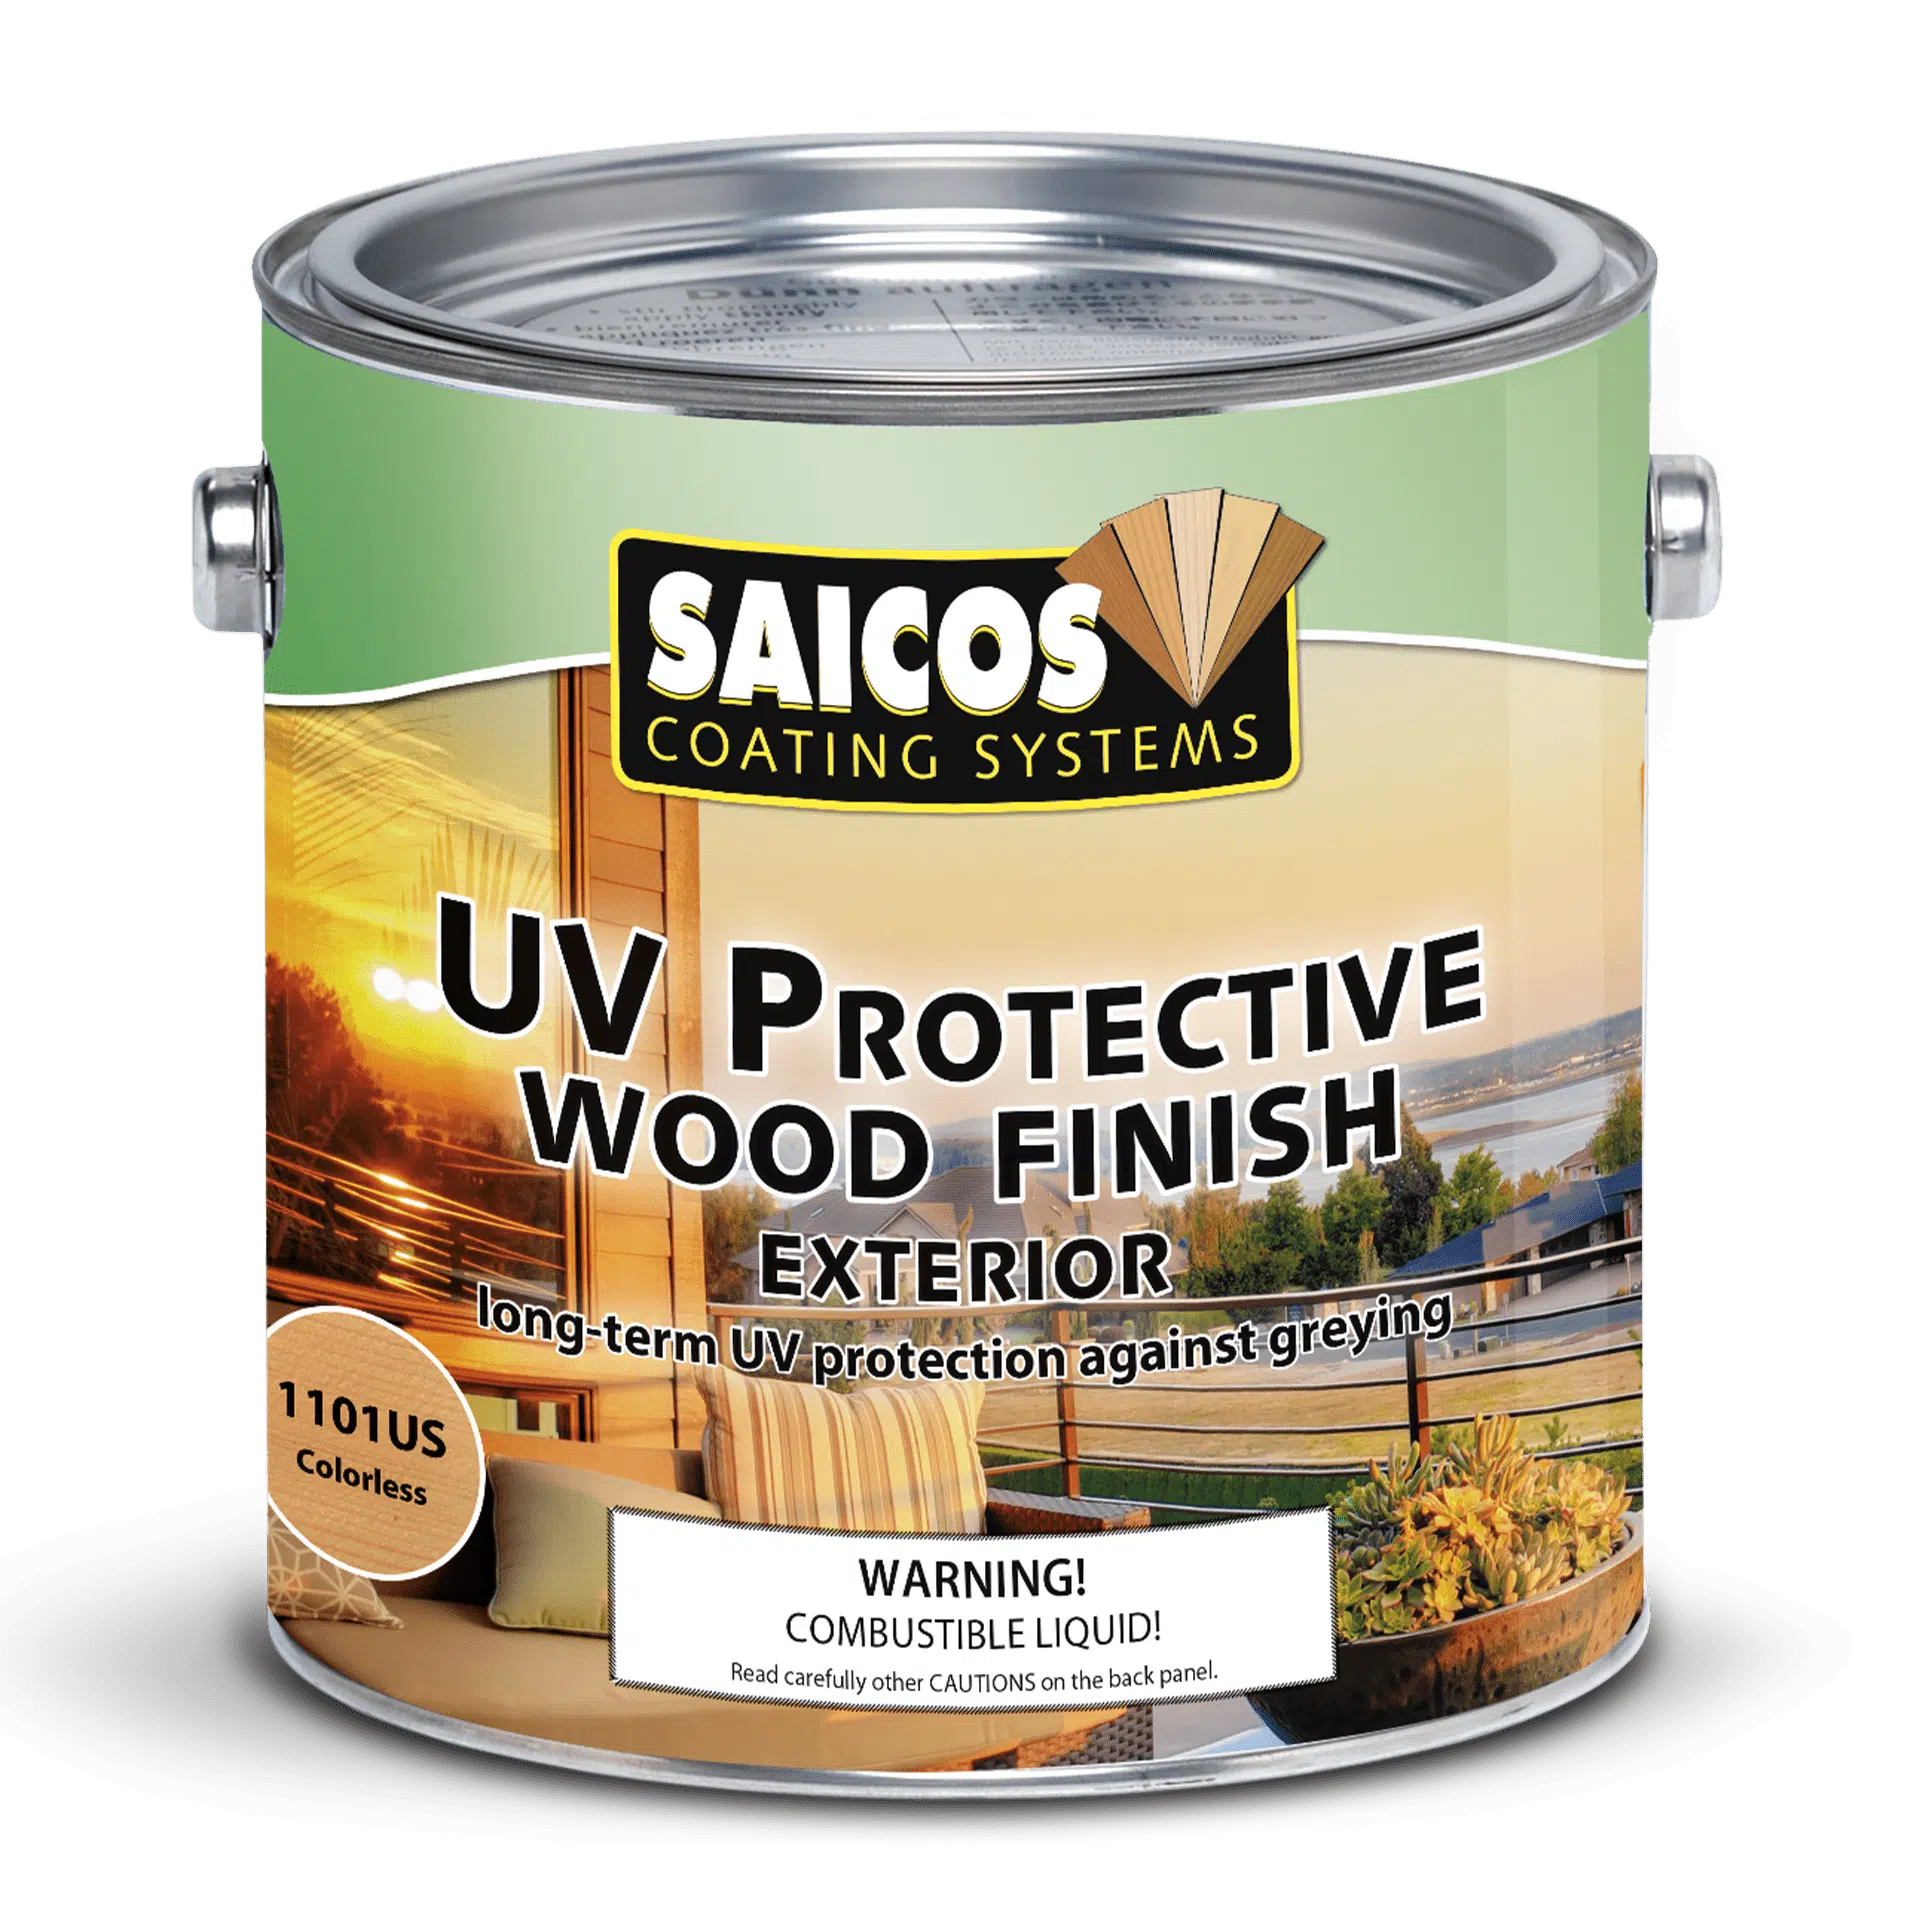 UV PROTECTIVE WOOD FINISH EXTERIOR (chuyên dụng cho các đồ gỗ ngoài trời)